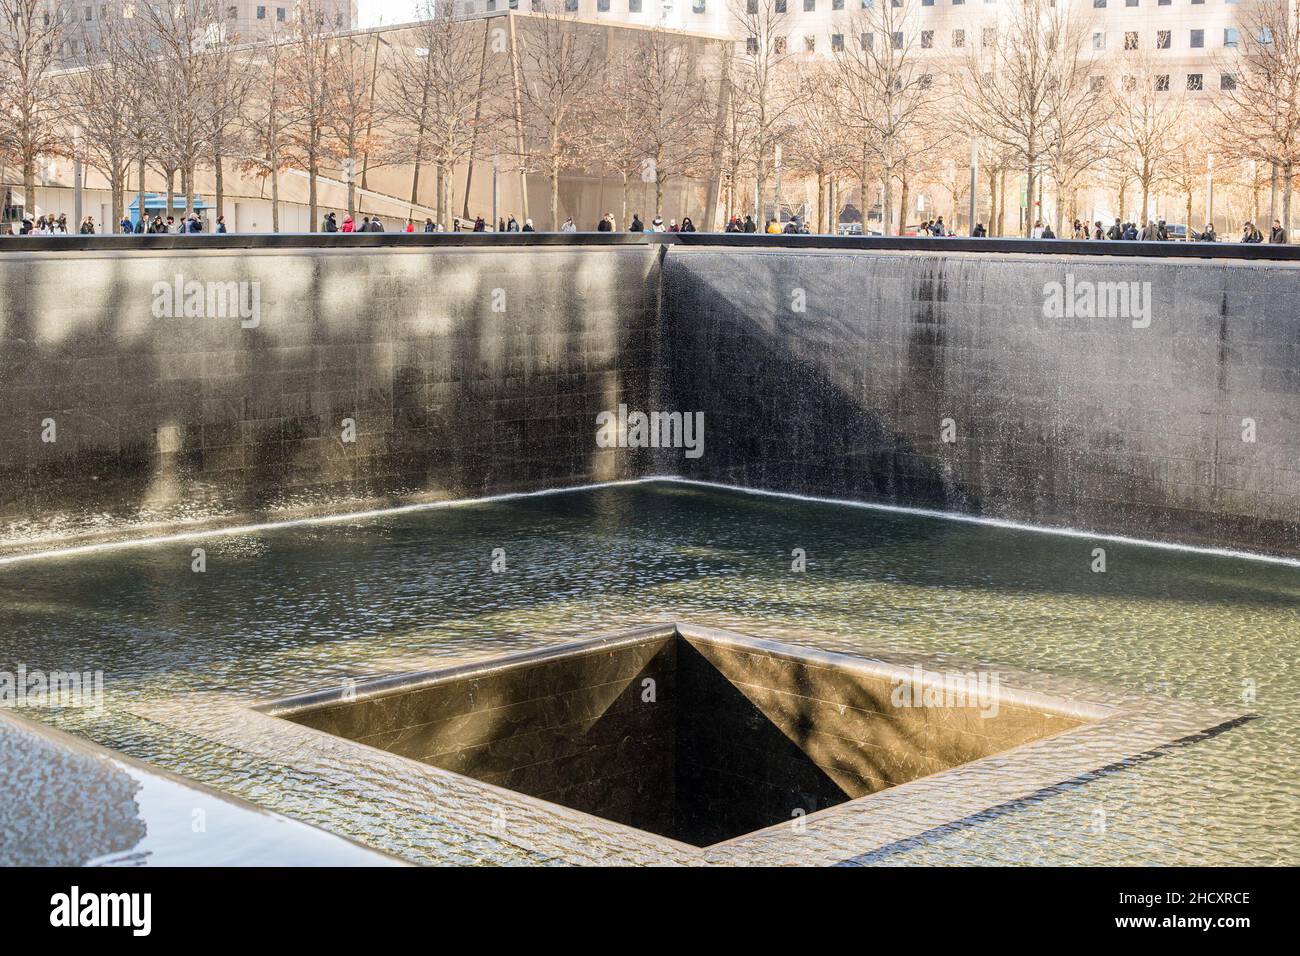 Nueva York, Estados Unidos. 26th de Dic de 2021. El Memorial de 9/11, un homenaje al recuerdo, en honor a las 2.977 personas asesinadas en los ataques terroristas del 11 de septiembre de 2001 en el sitio del World Trade Center, cerca de Shanksville, Pensilvania, y en el Pentágono, así como a las seis personas muertas en el atentado del World Trade Center el 26 de febrero de 1993. (Foto de Shawn Goldberg/SOPA Images/Sipa USA) Crédito: SIPA USA/Alamy Live News Foto de stock